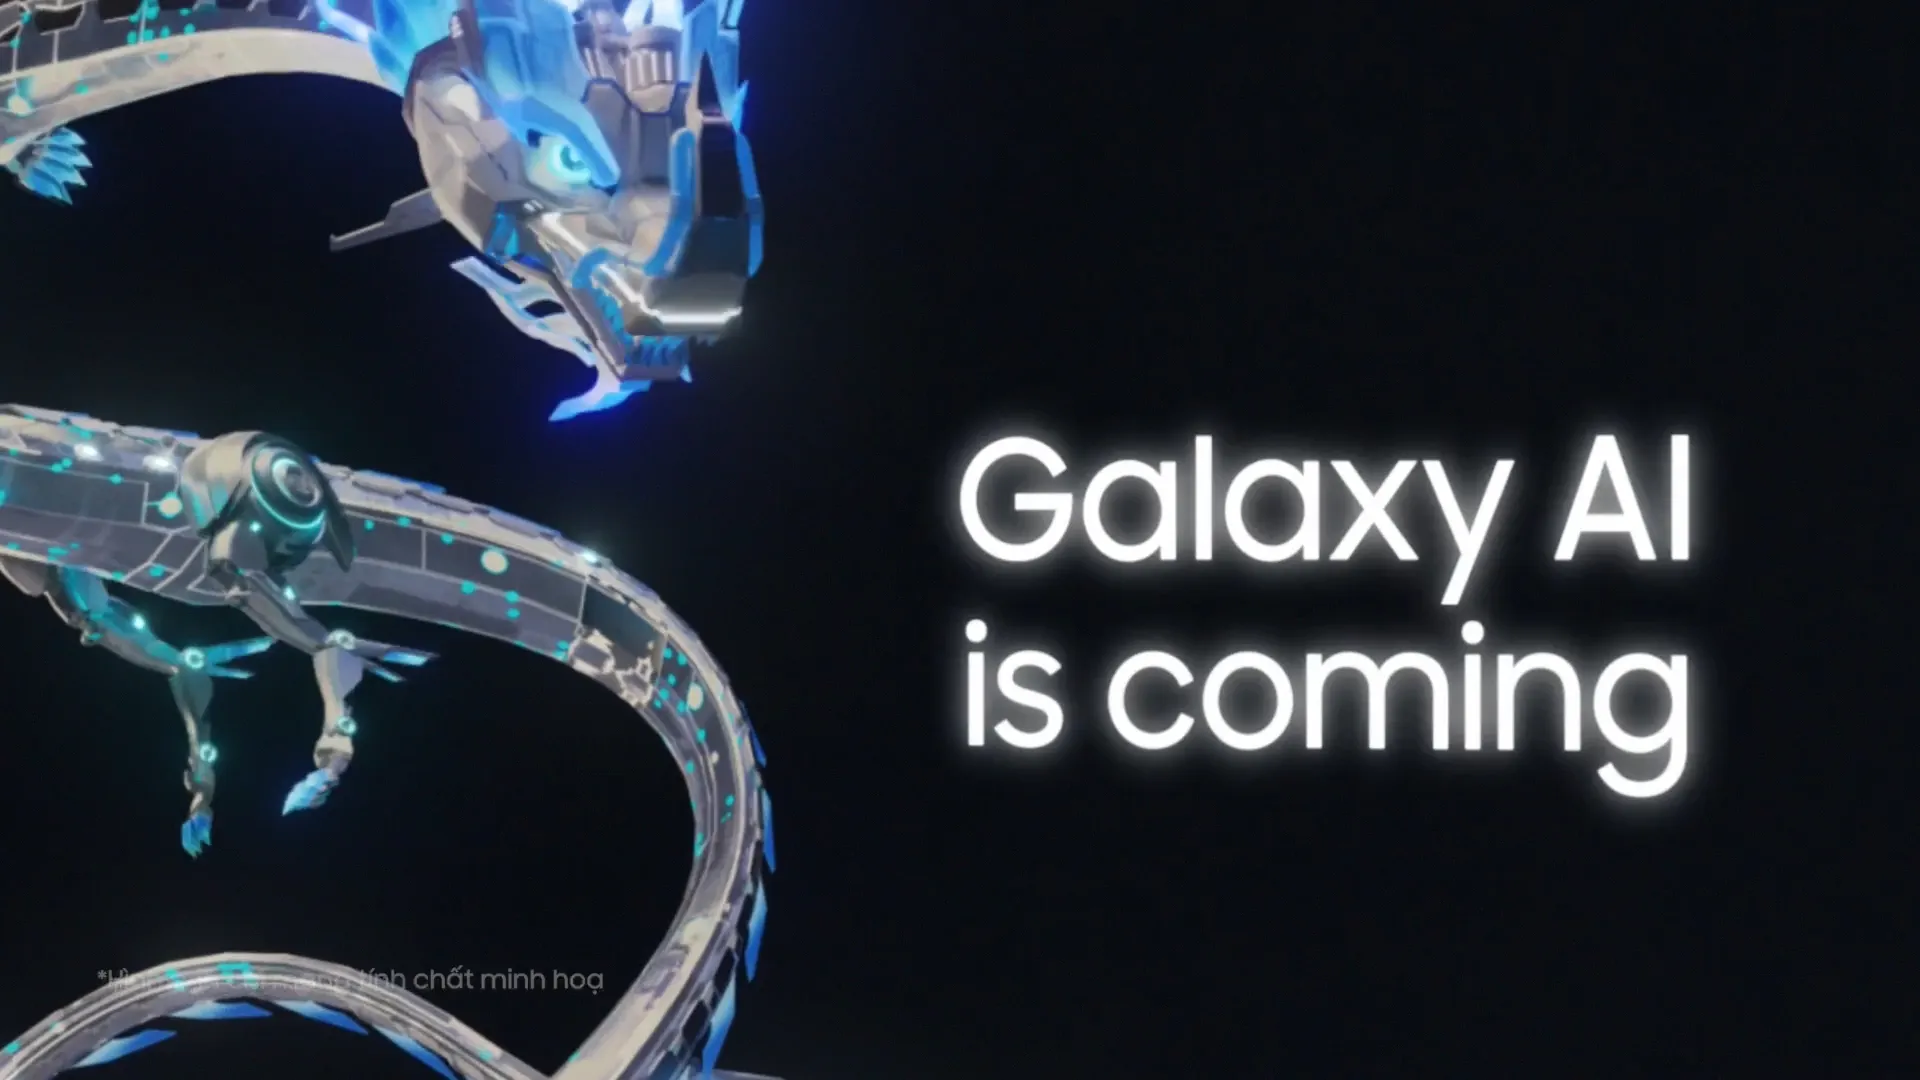 Samsung tung Digital OOH đặc biệt lấy hình tượng con rồng Giáp Thìn, hé lộ sức mạnh Galaxy AI